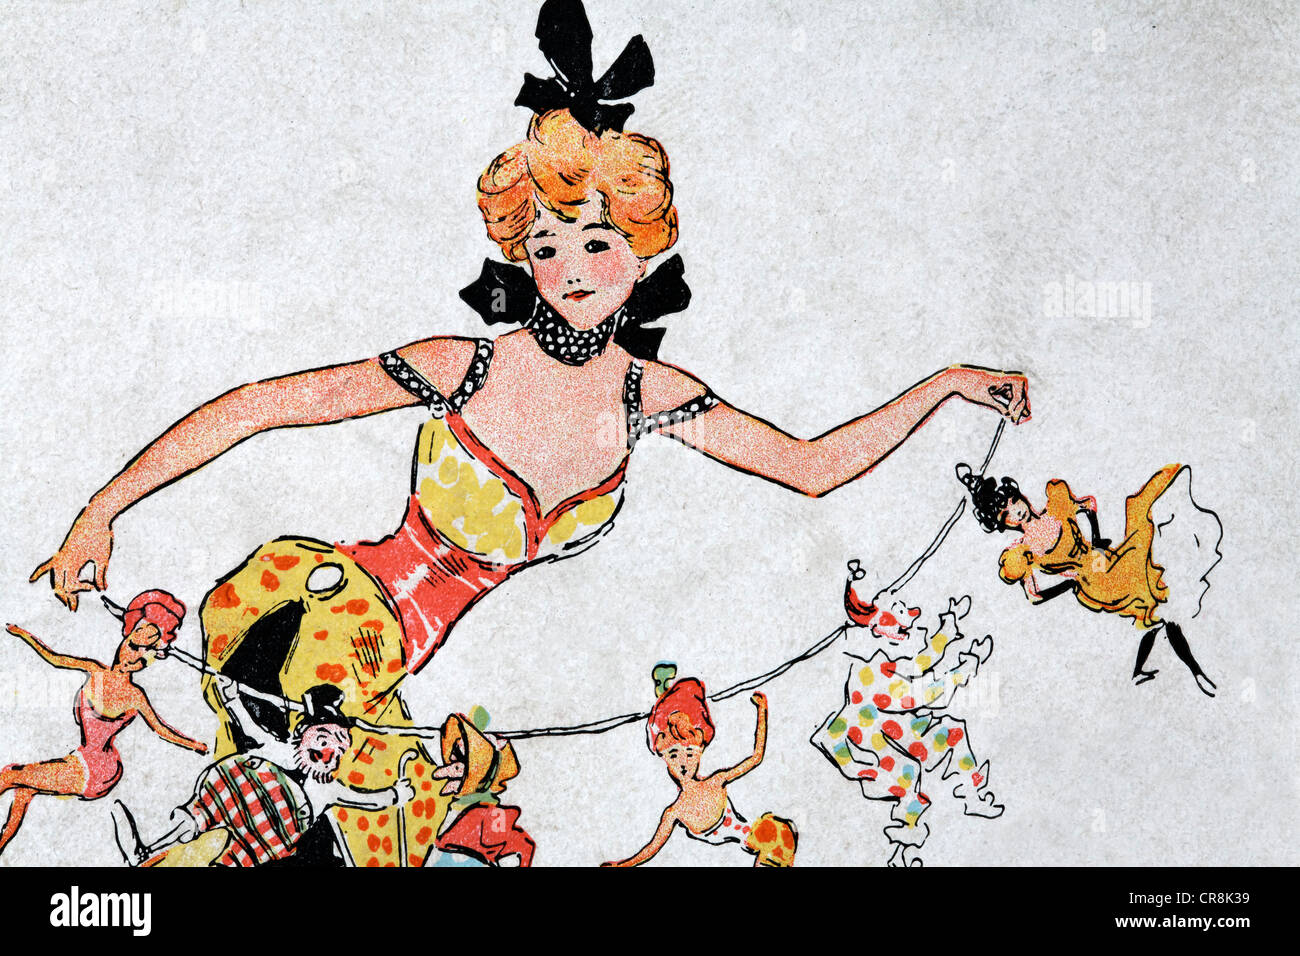 Ilustración de una bailarina revue parisina, programa histórico, alrededor de 1900, París, Francia, Europa Foto de stock